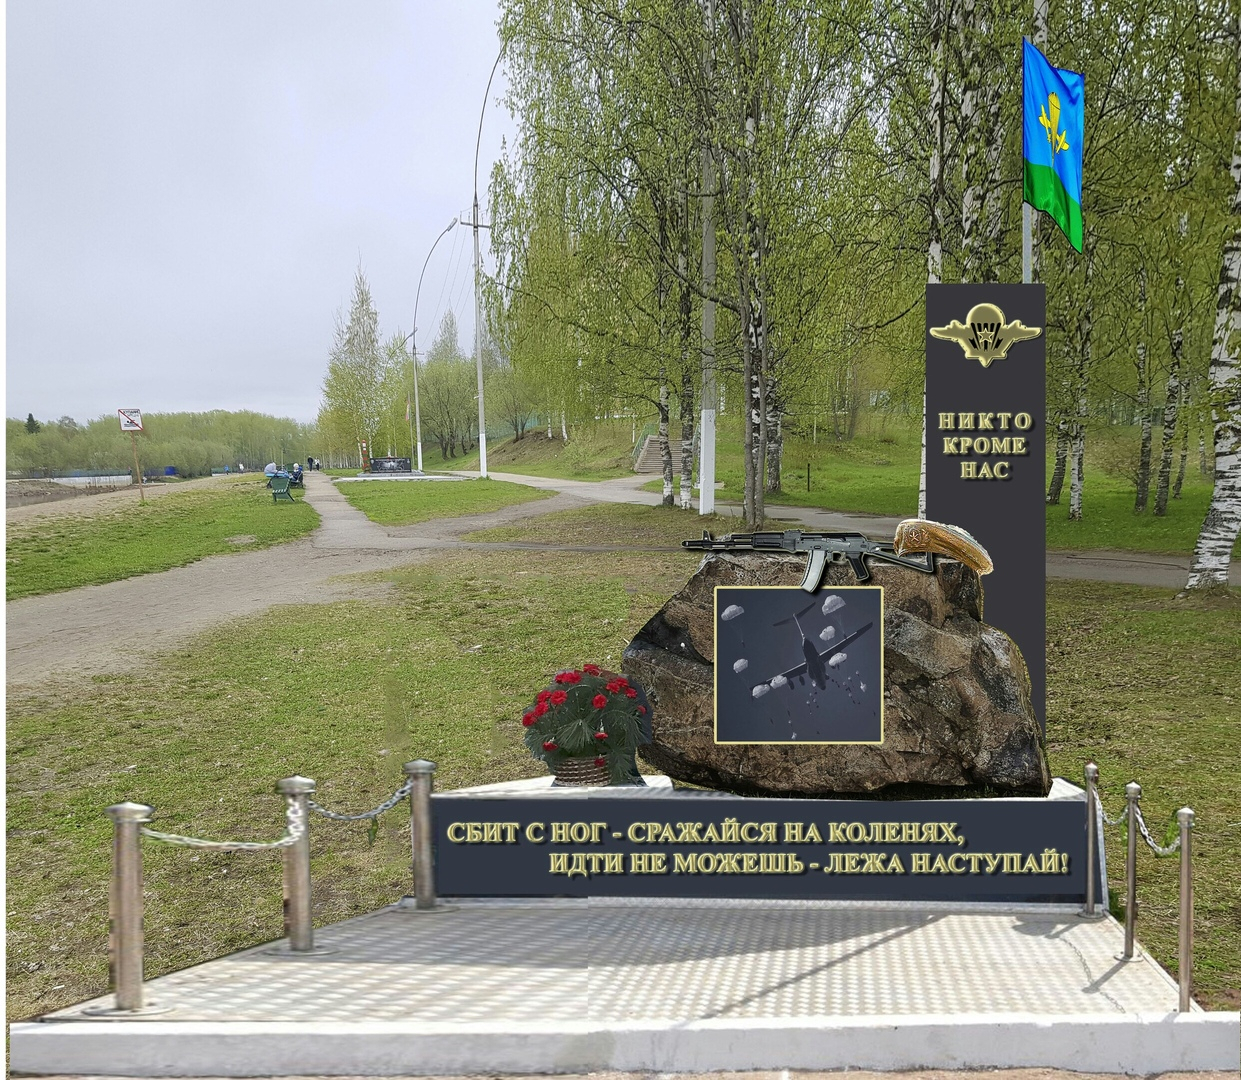 Ухтинцам предлагают пожертвовать деньги на улучшение памятника десантникам